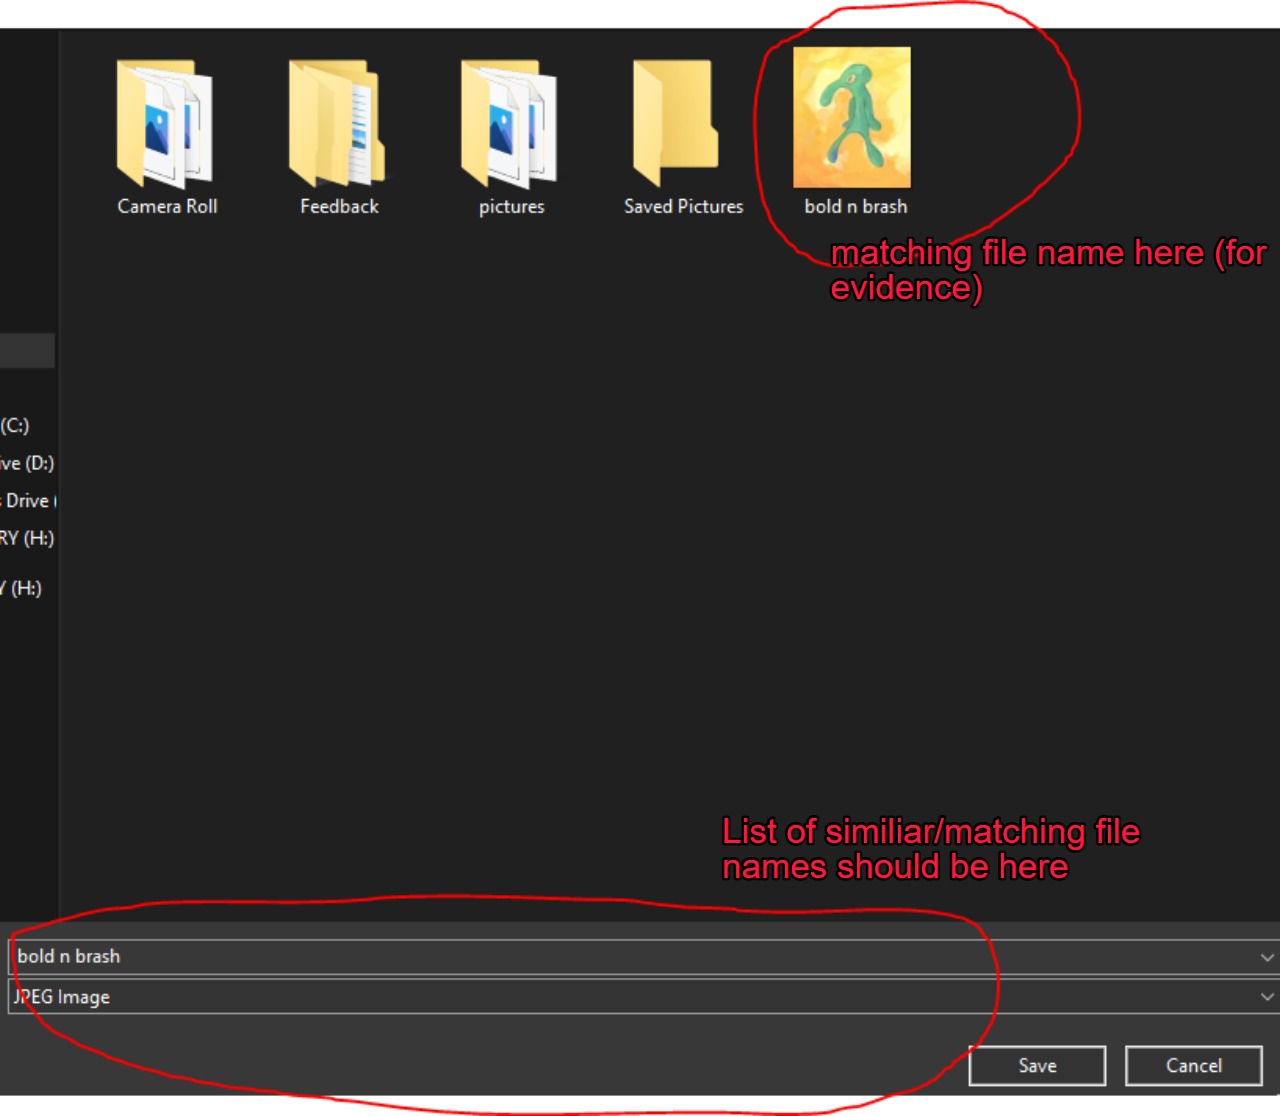 File Explorer similar file names no longer appear e8d2284a-9f16-4115-b7dd-71e947c36834?upload=true.jpg